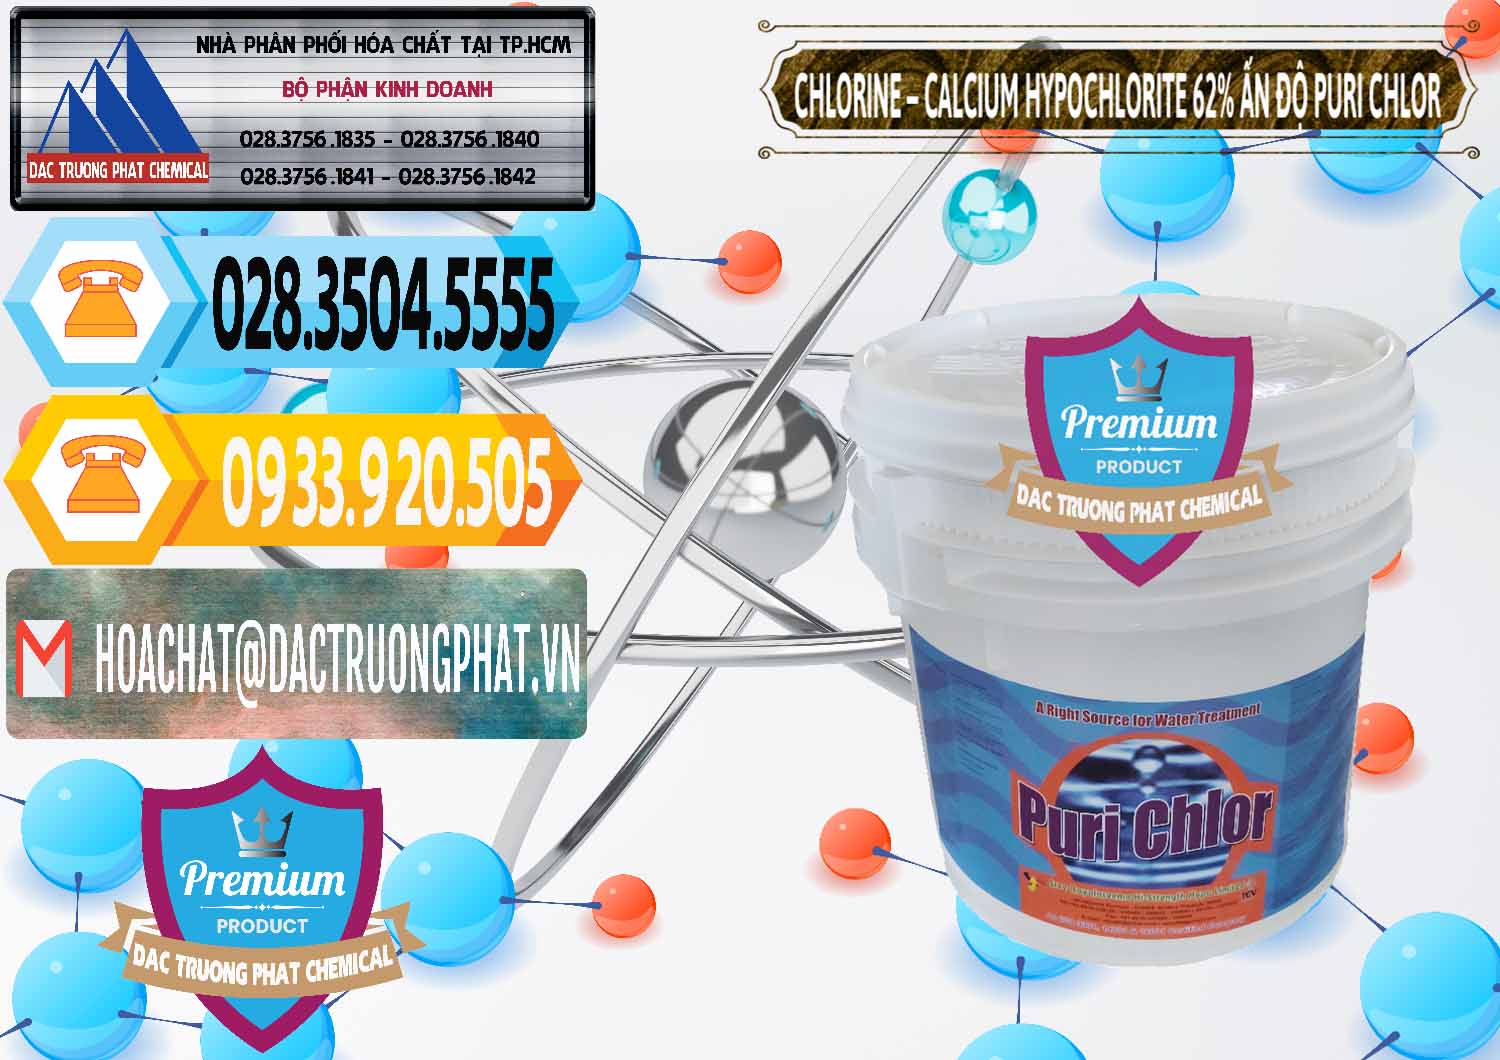 Bán Chlorine – Clorin 62% Puri Chlo Ấn Độ India - 0052 - Đơn vị cung cấp ( nhập khẩu ) hóa chất tại TP.HCM - hoachattayrua.net